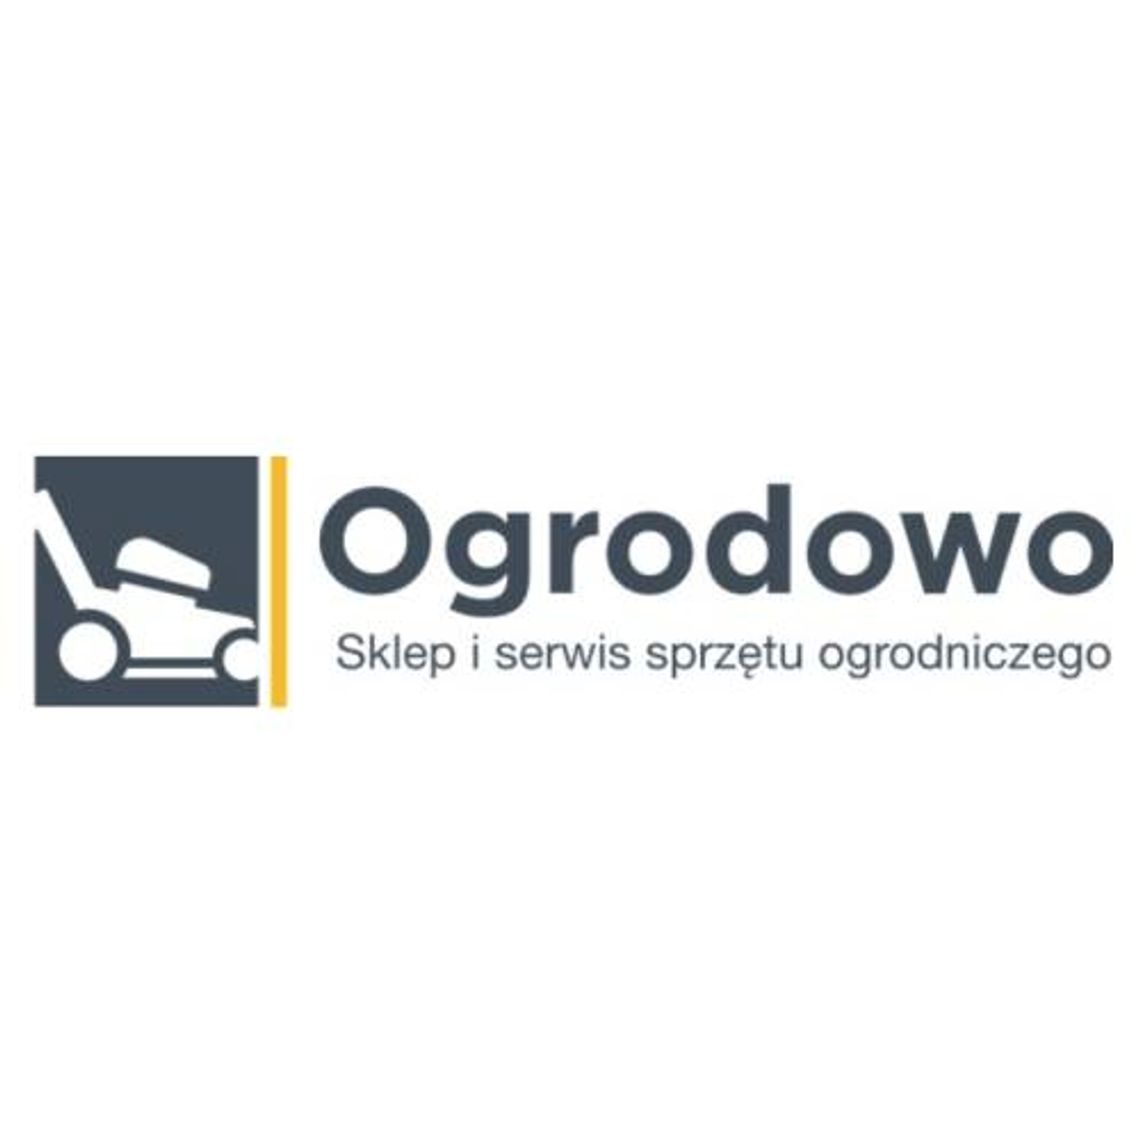 Eogrodowo.pl - sklep z sprzętem ogrodniczym